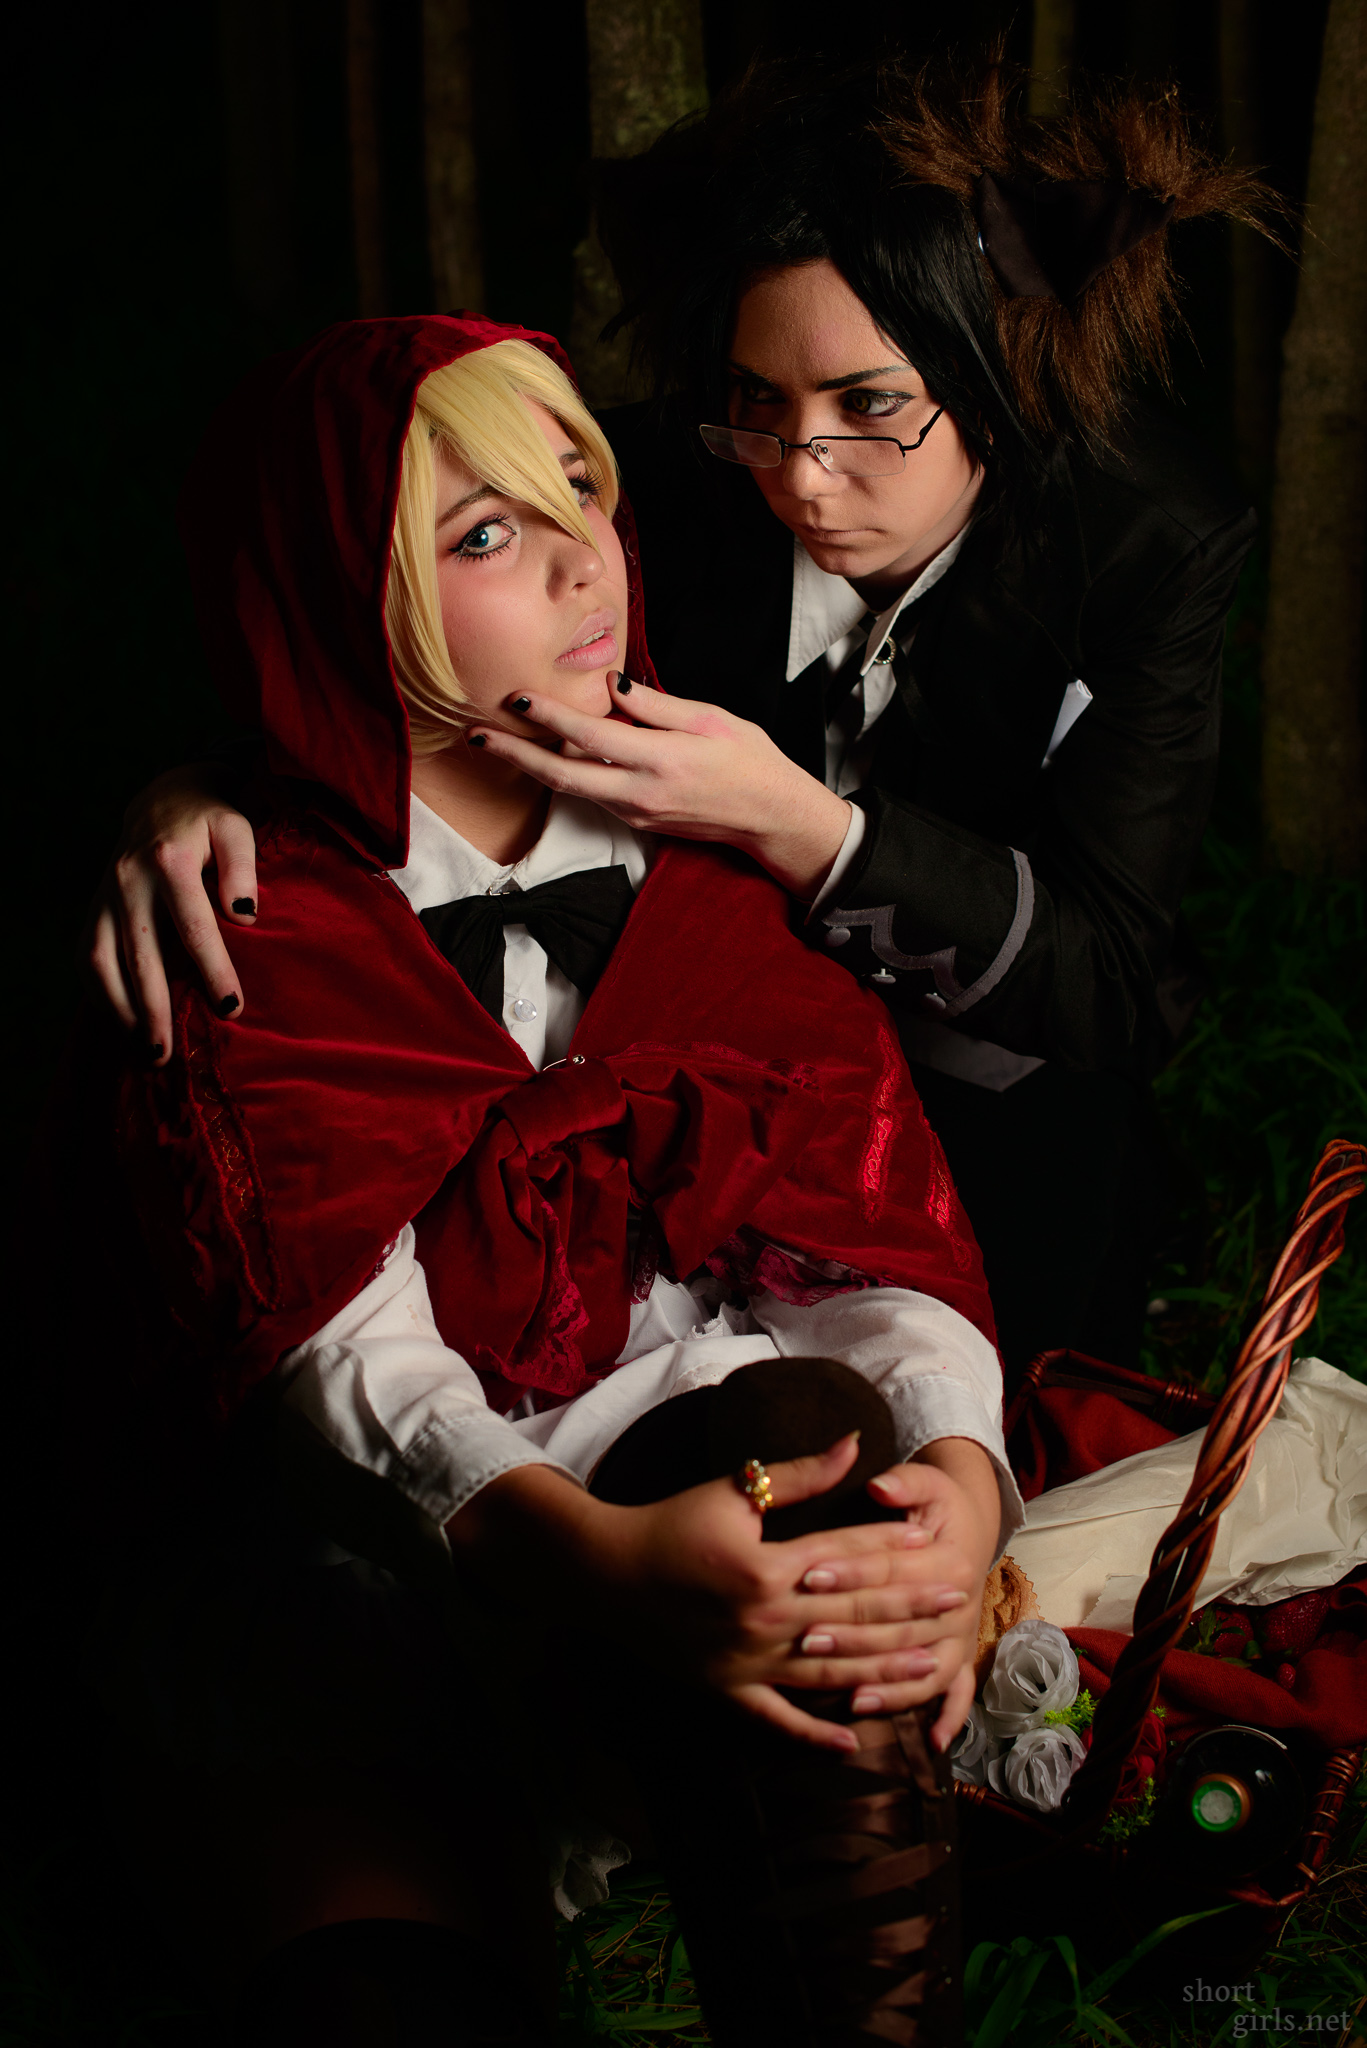 Kat and Jenna – Alois and Claude (Kuroshitsuji)